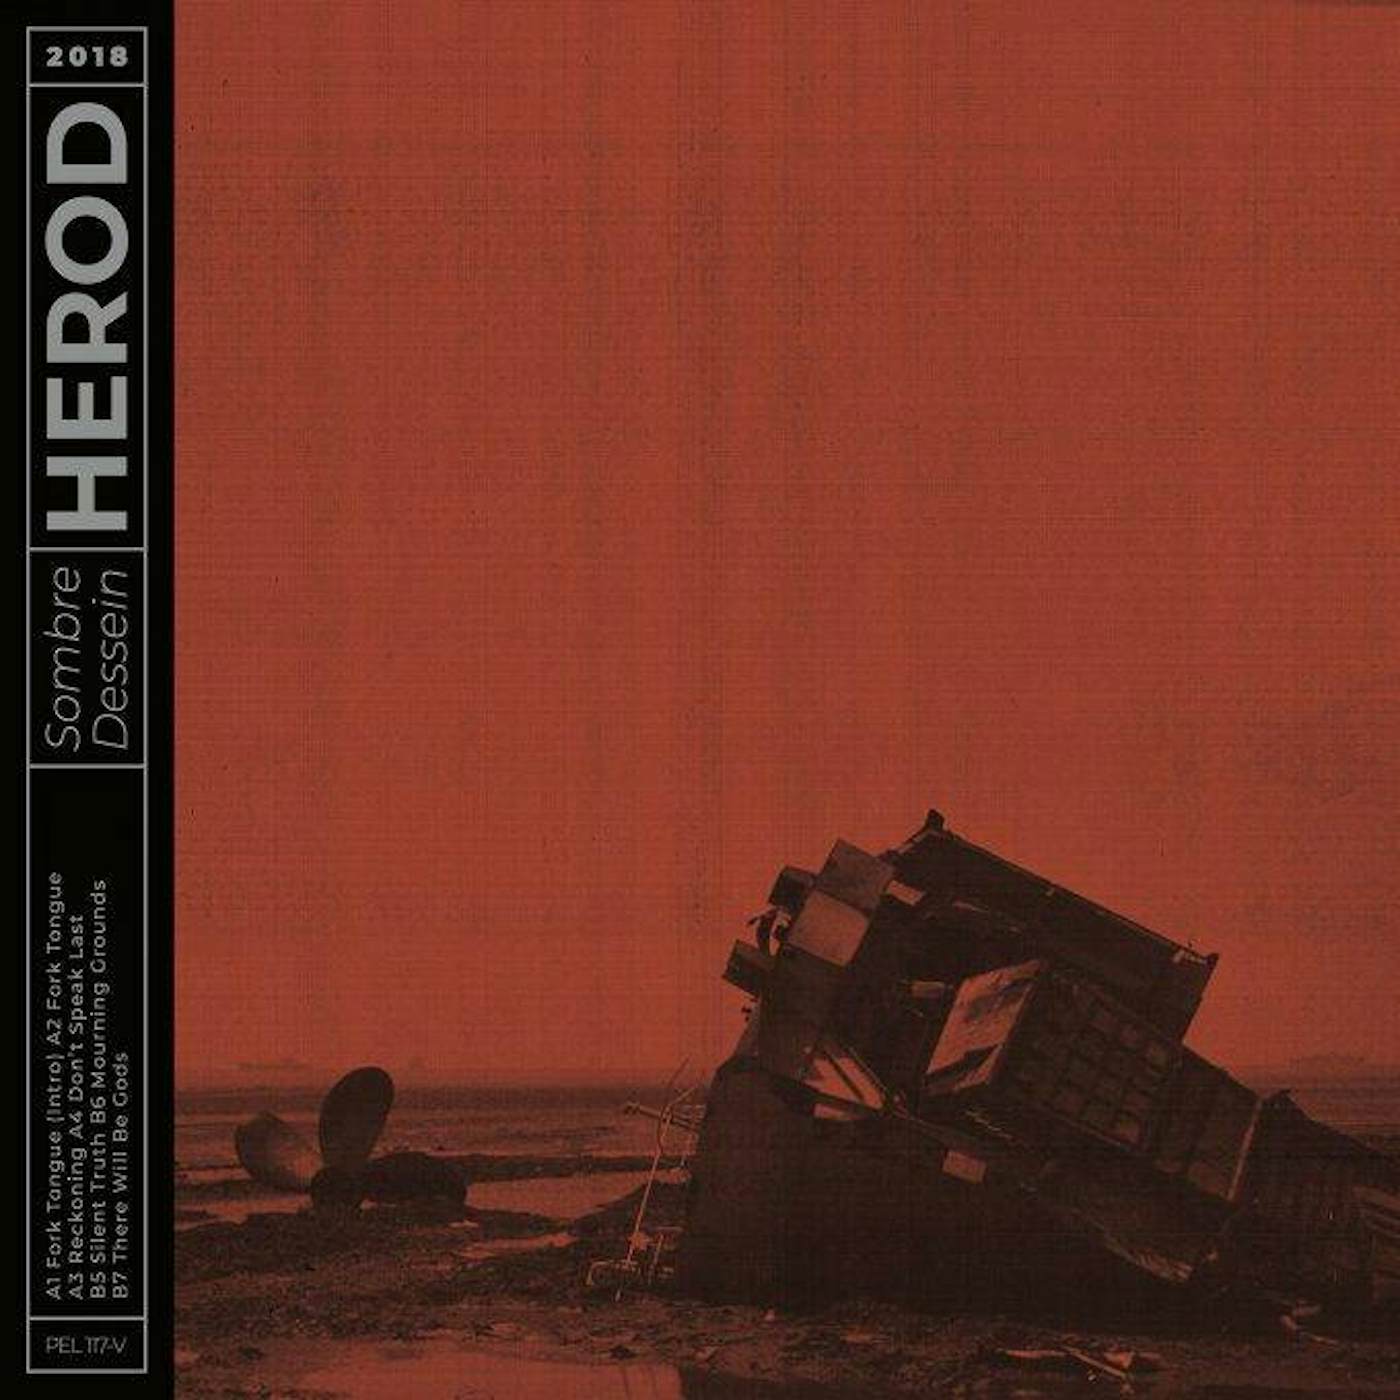 Herod Sombre Dessein Vinyl Record